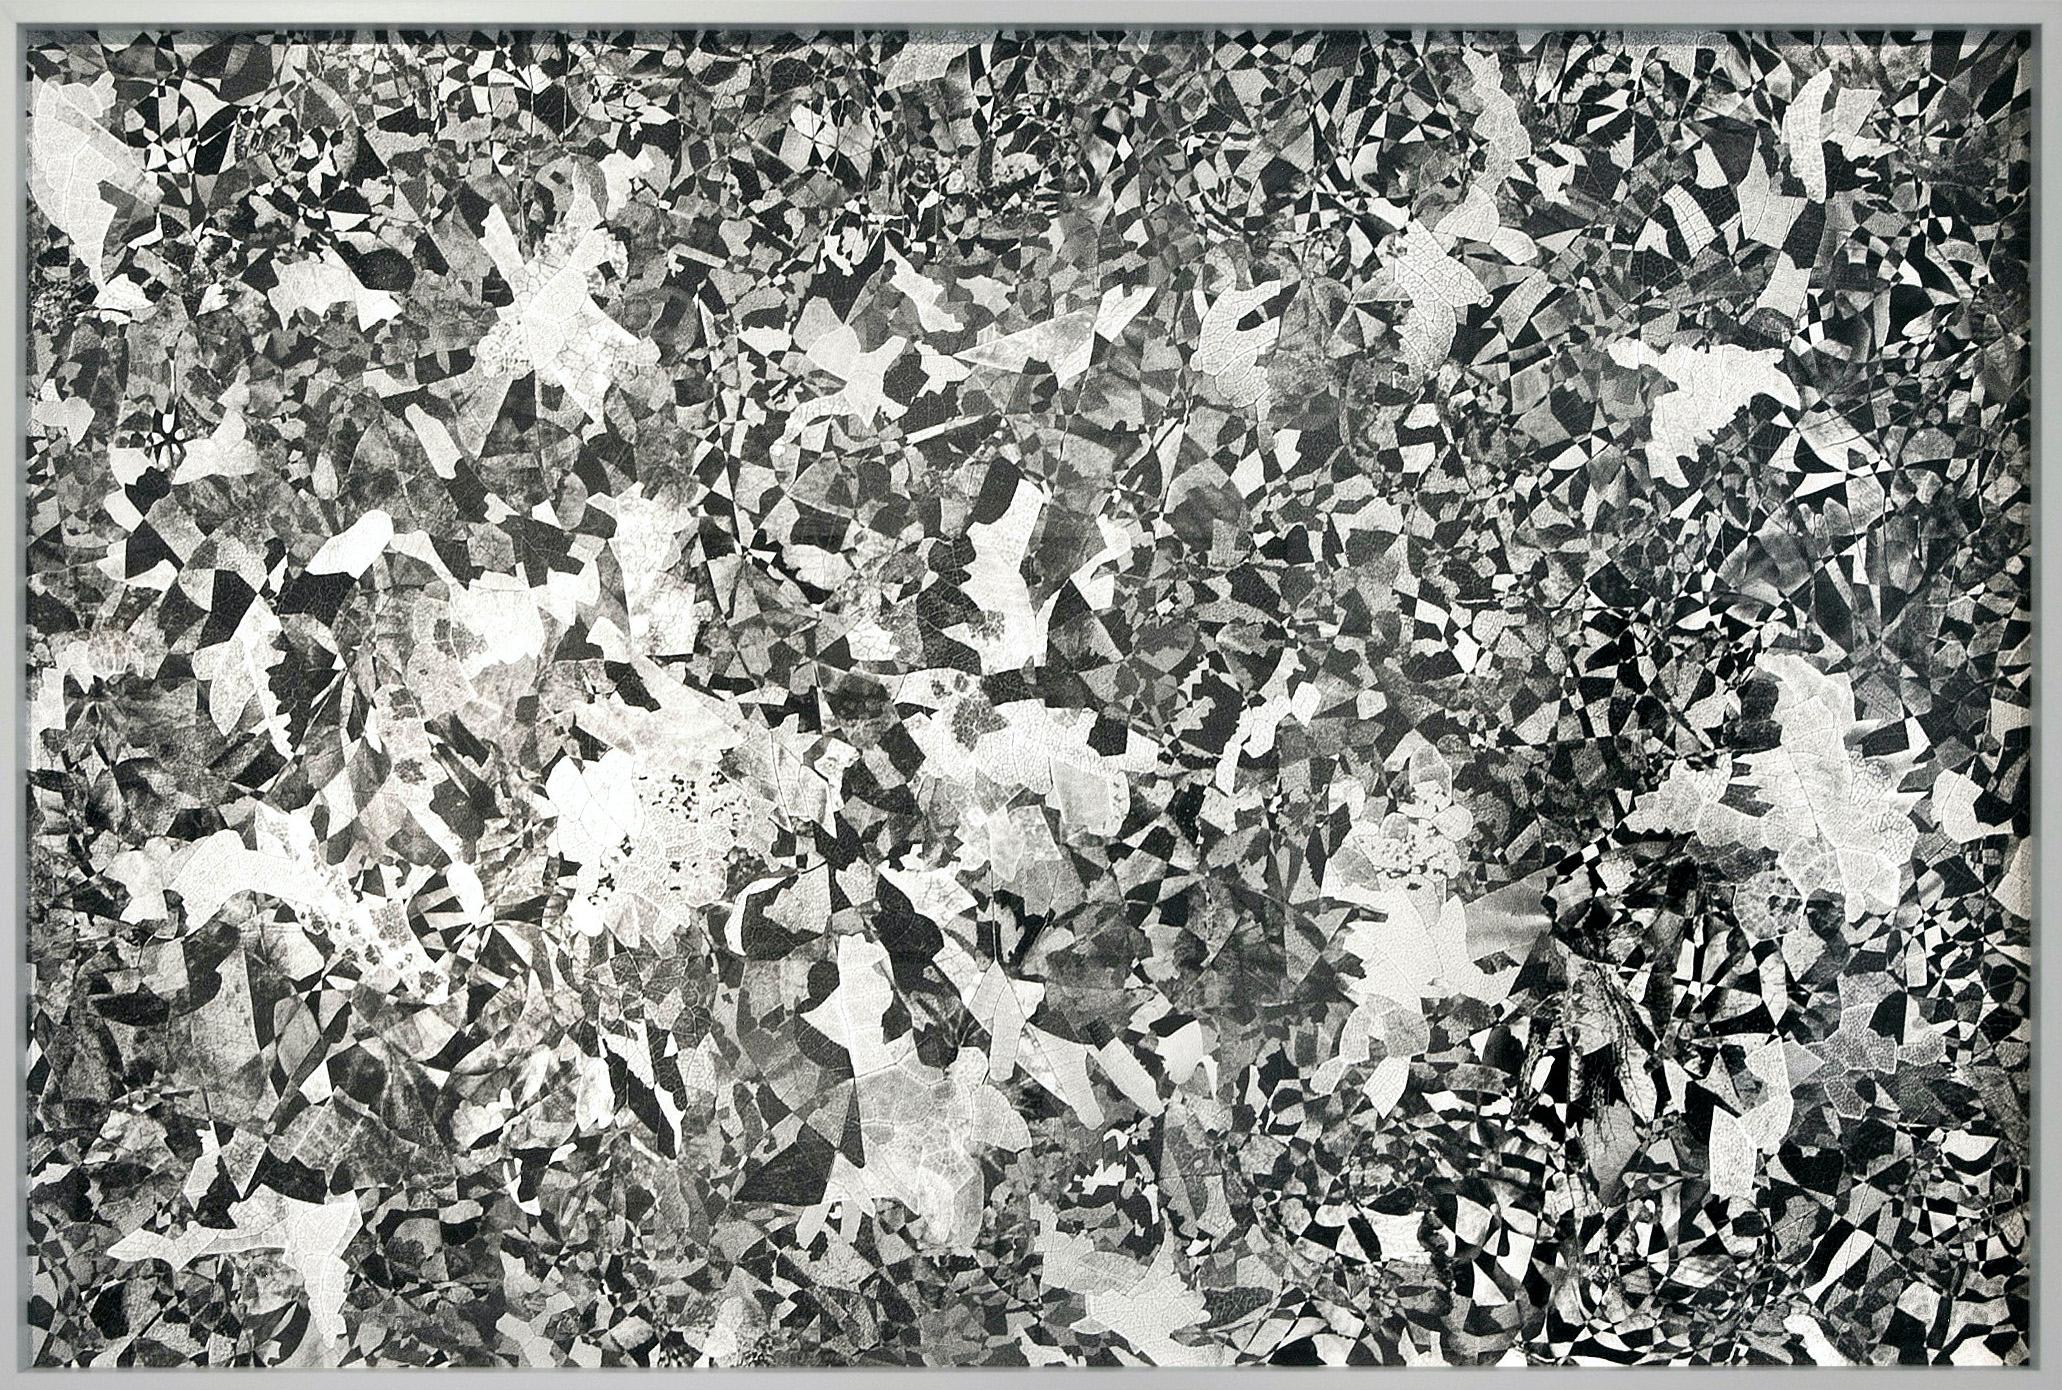 Hubert Blanz Landscape Photograph – Zeitgenössische abstrakte Diamant-Texturfotografie der Feldforschung 05